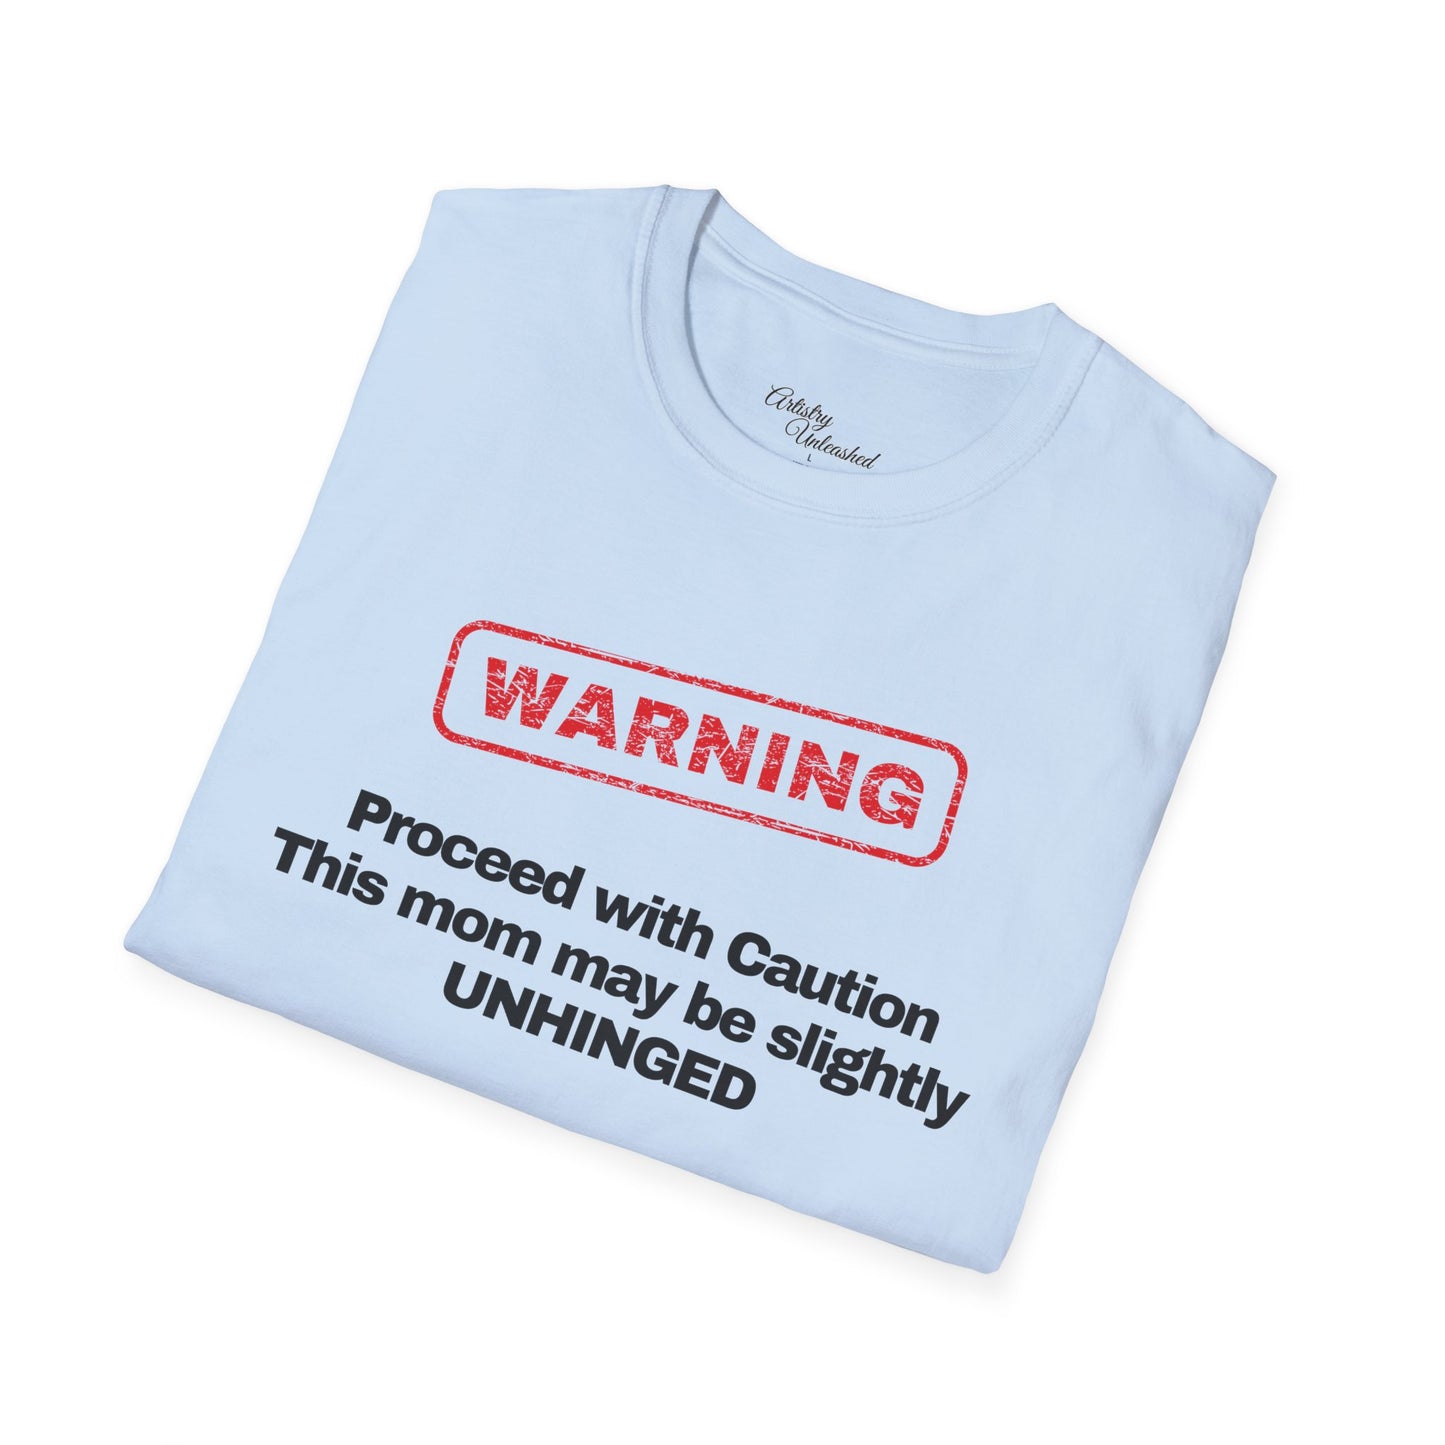 Warning Unisex Softstyle T-Shirt